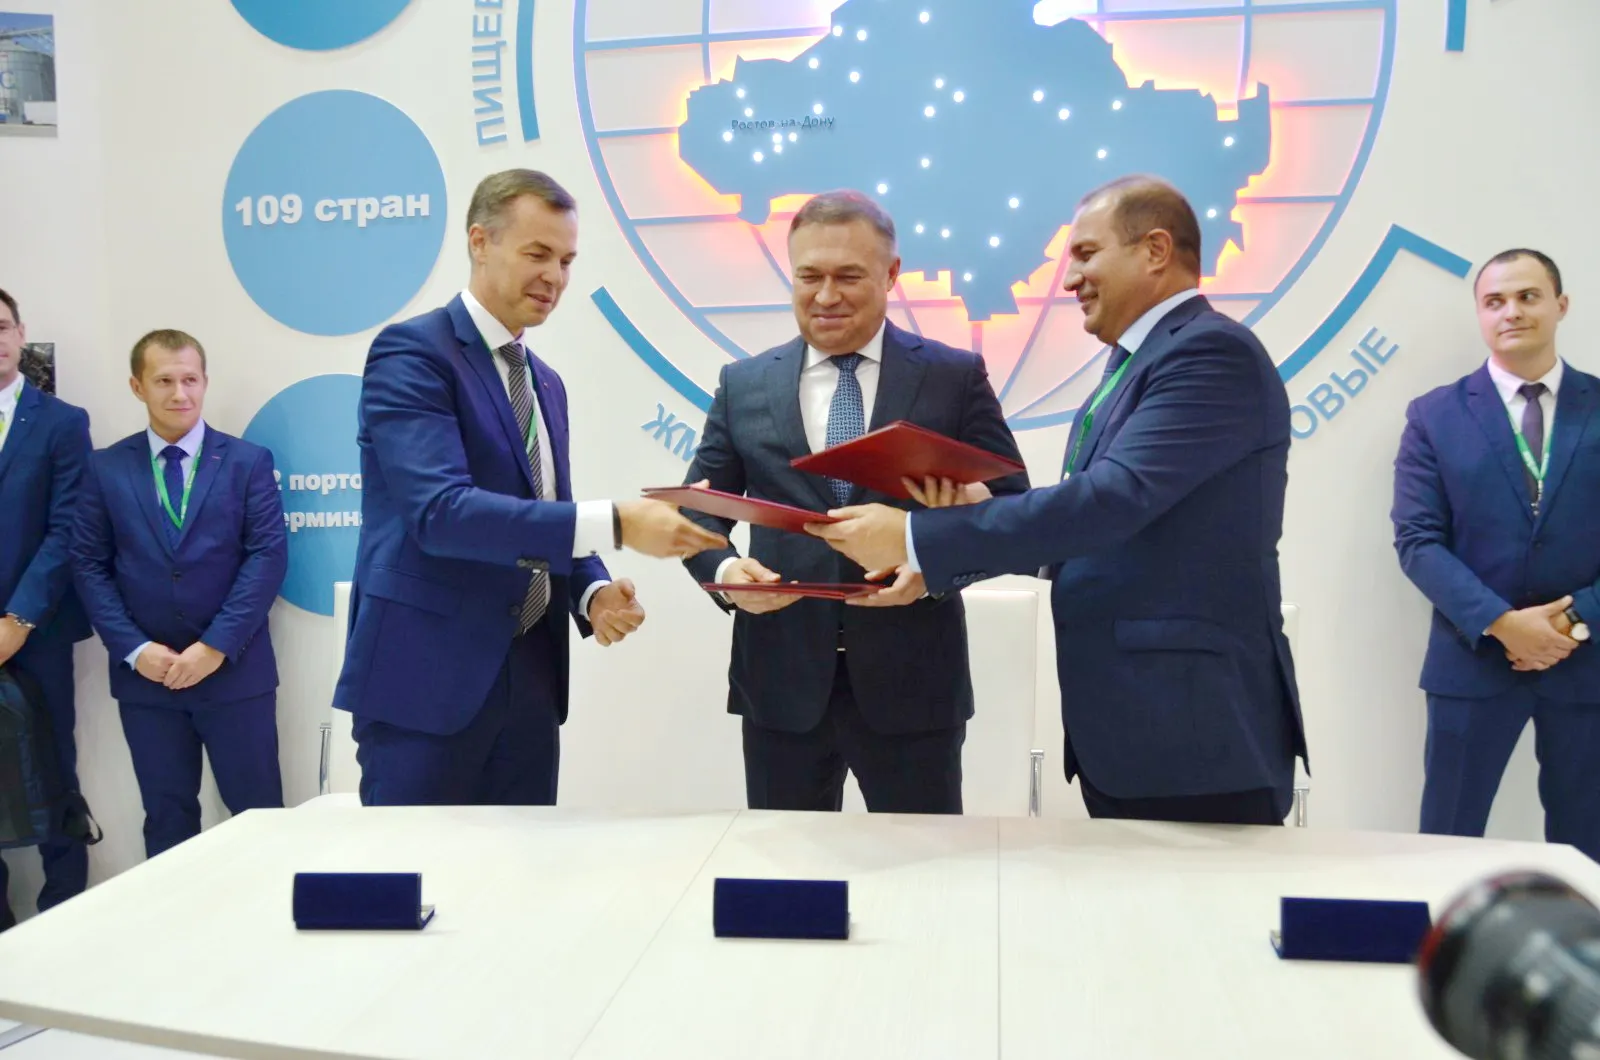 Сбербанк заключил соглашение о сотрудничестве с правительством Ростовской области и ООО «Азовский морской терминал»